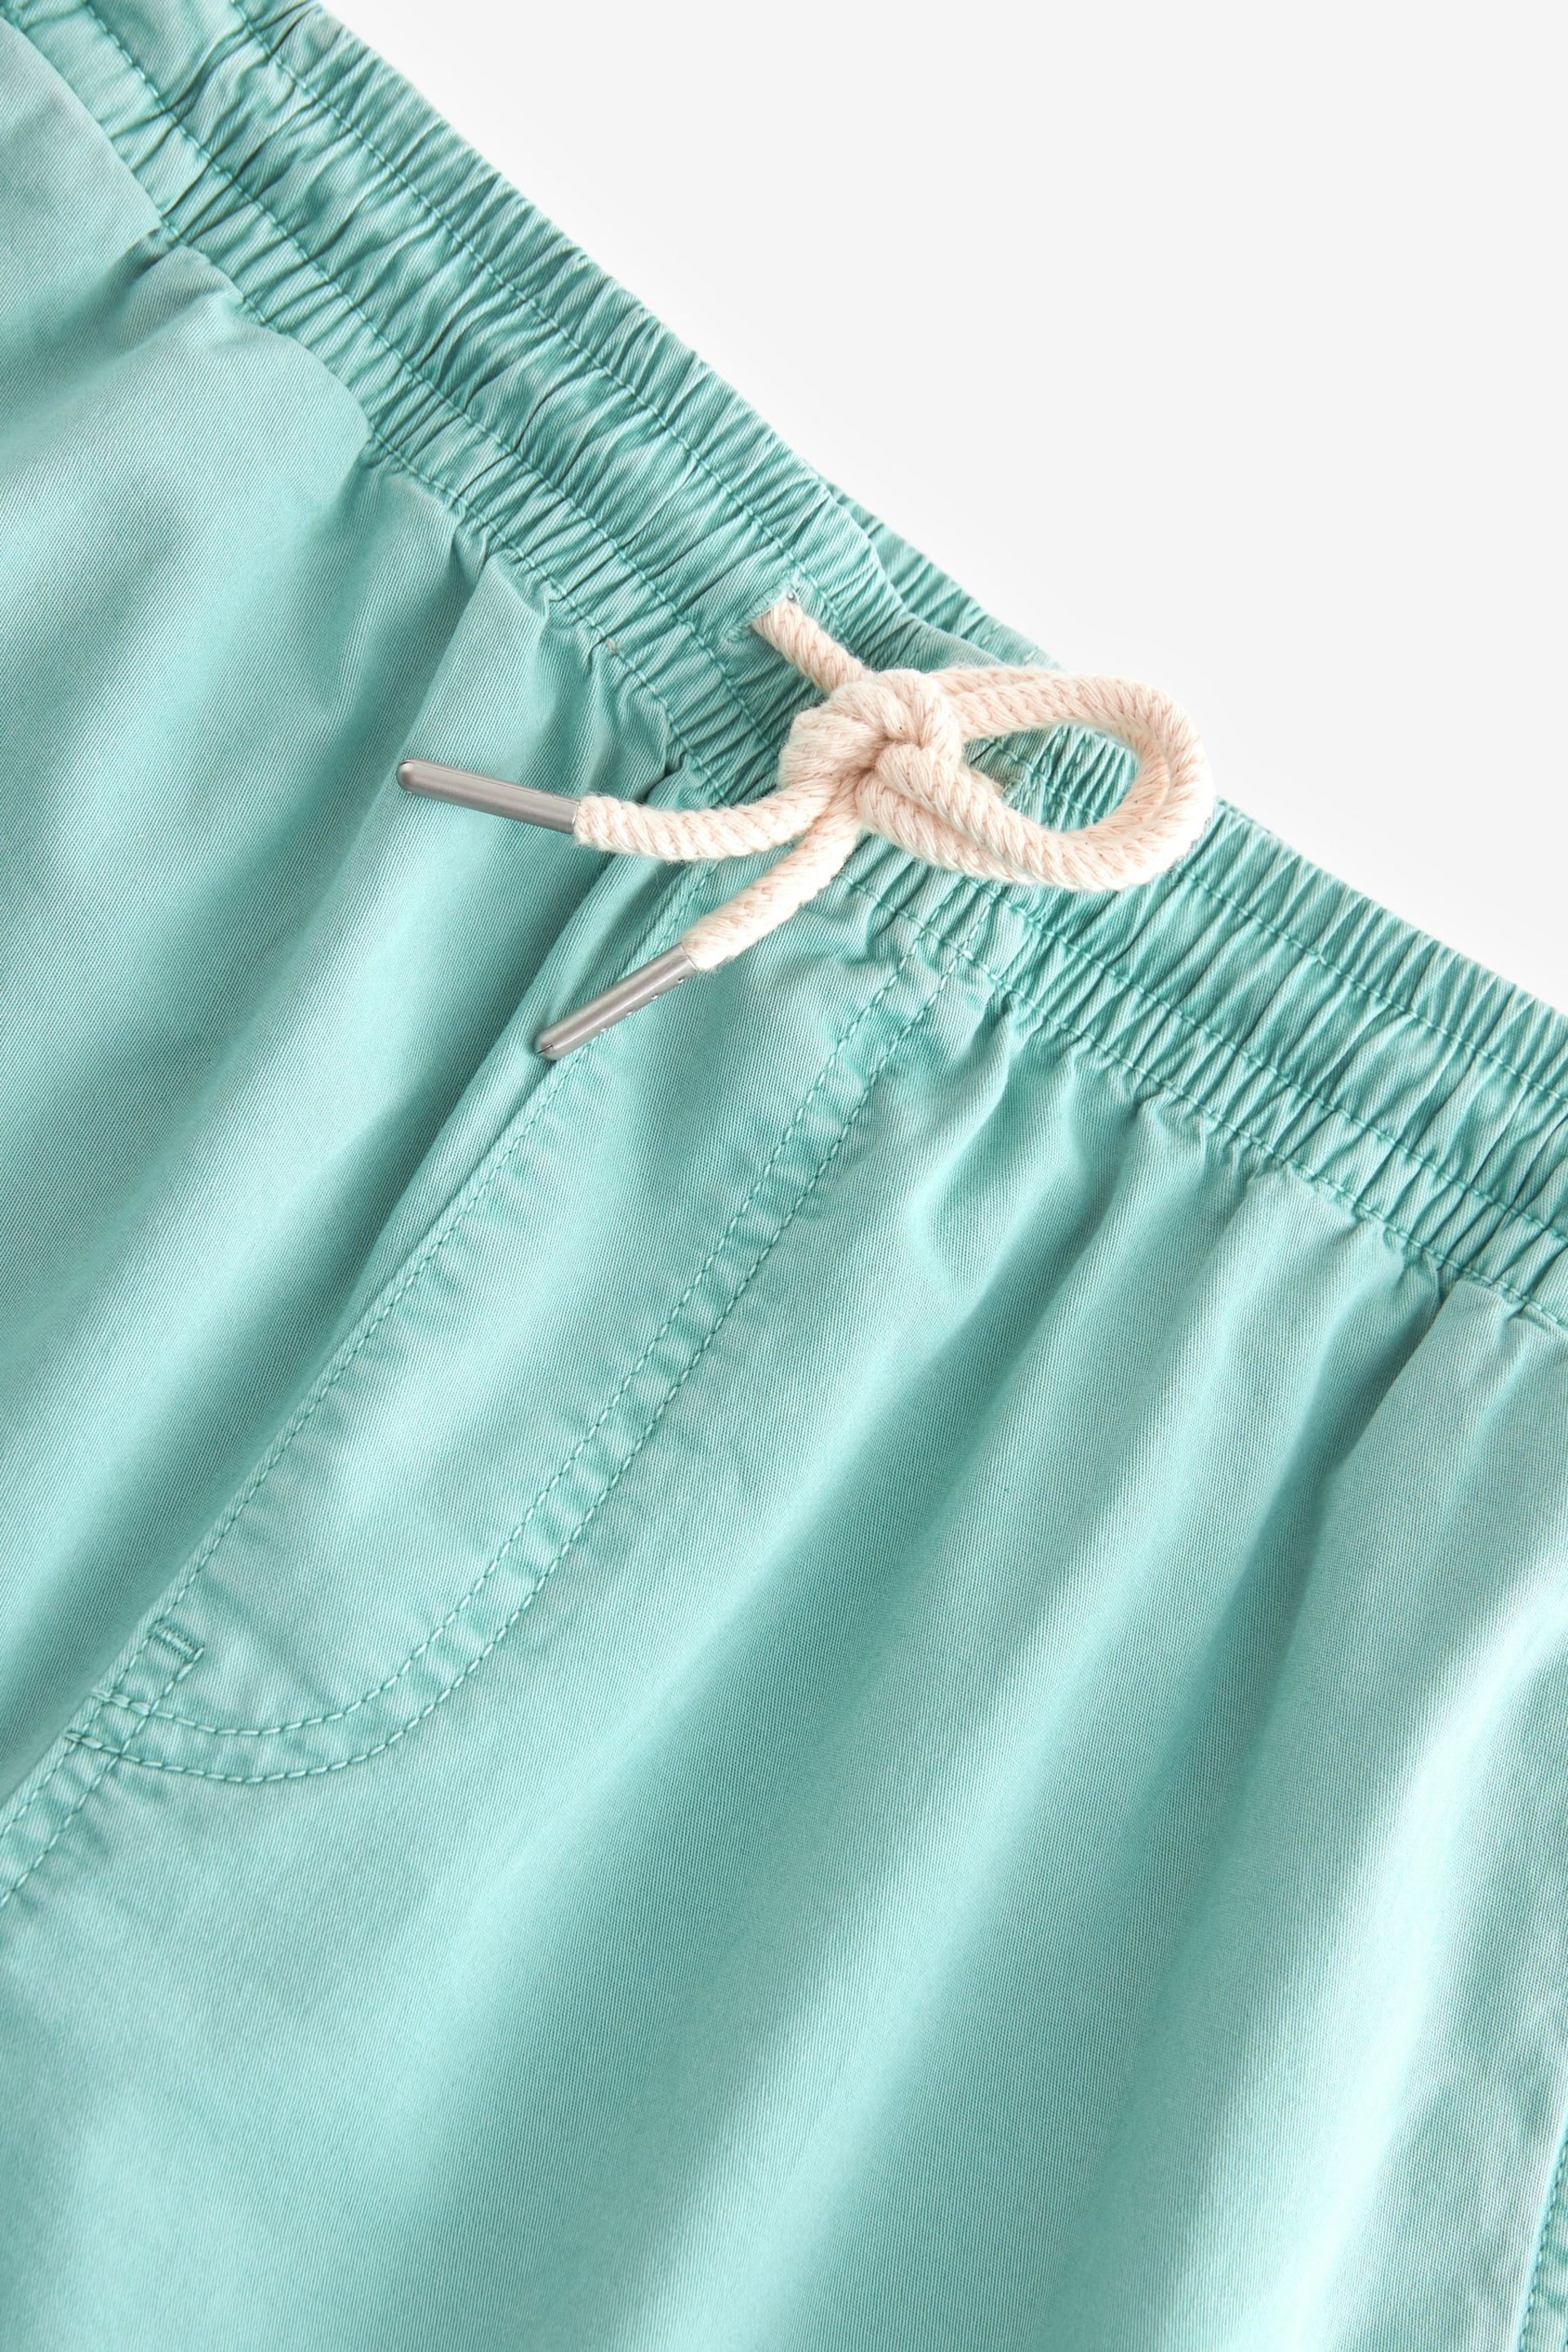 Aqua Blue Washed Cotton Elasticated Waist Shorts - Image 7 of 10